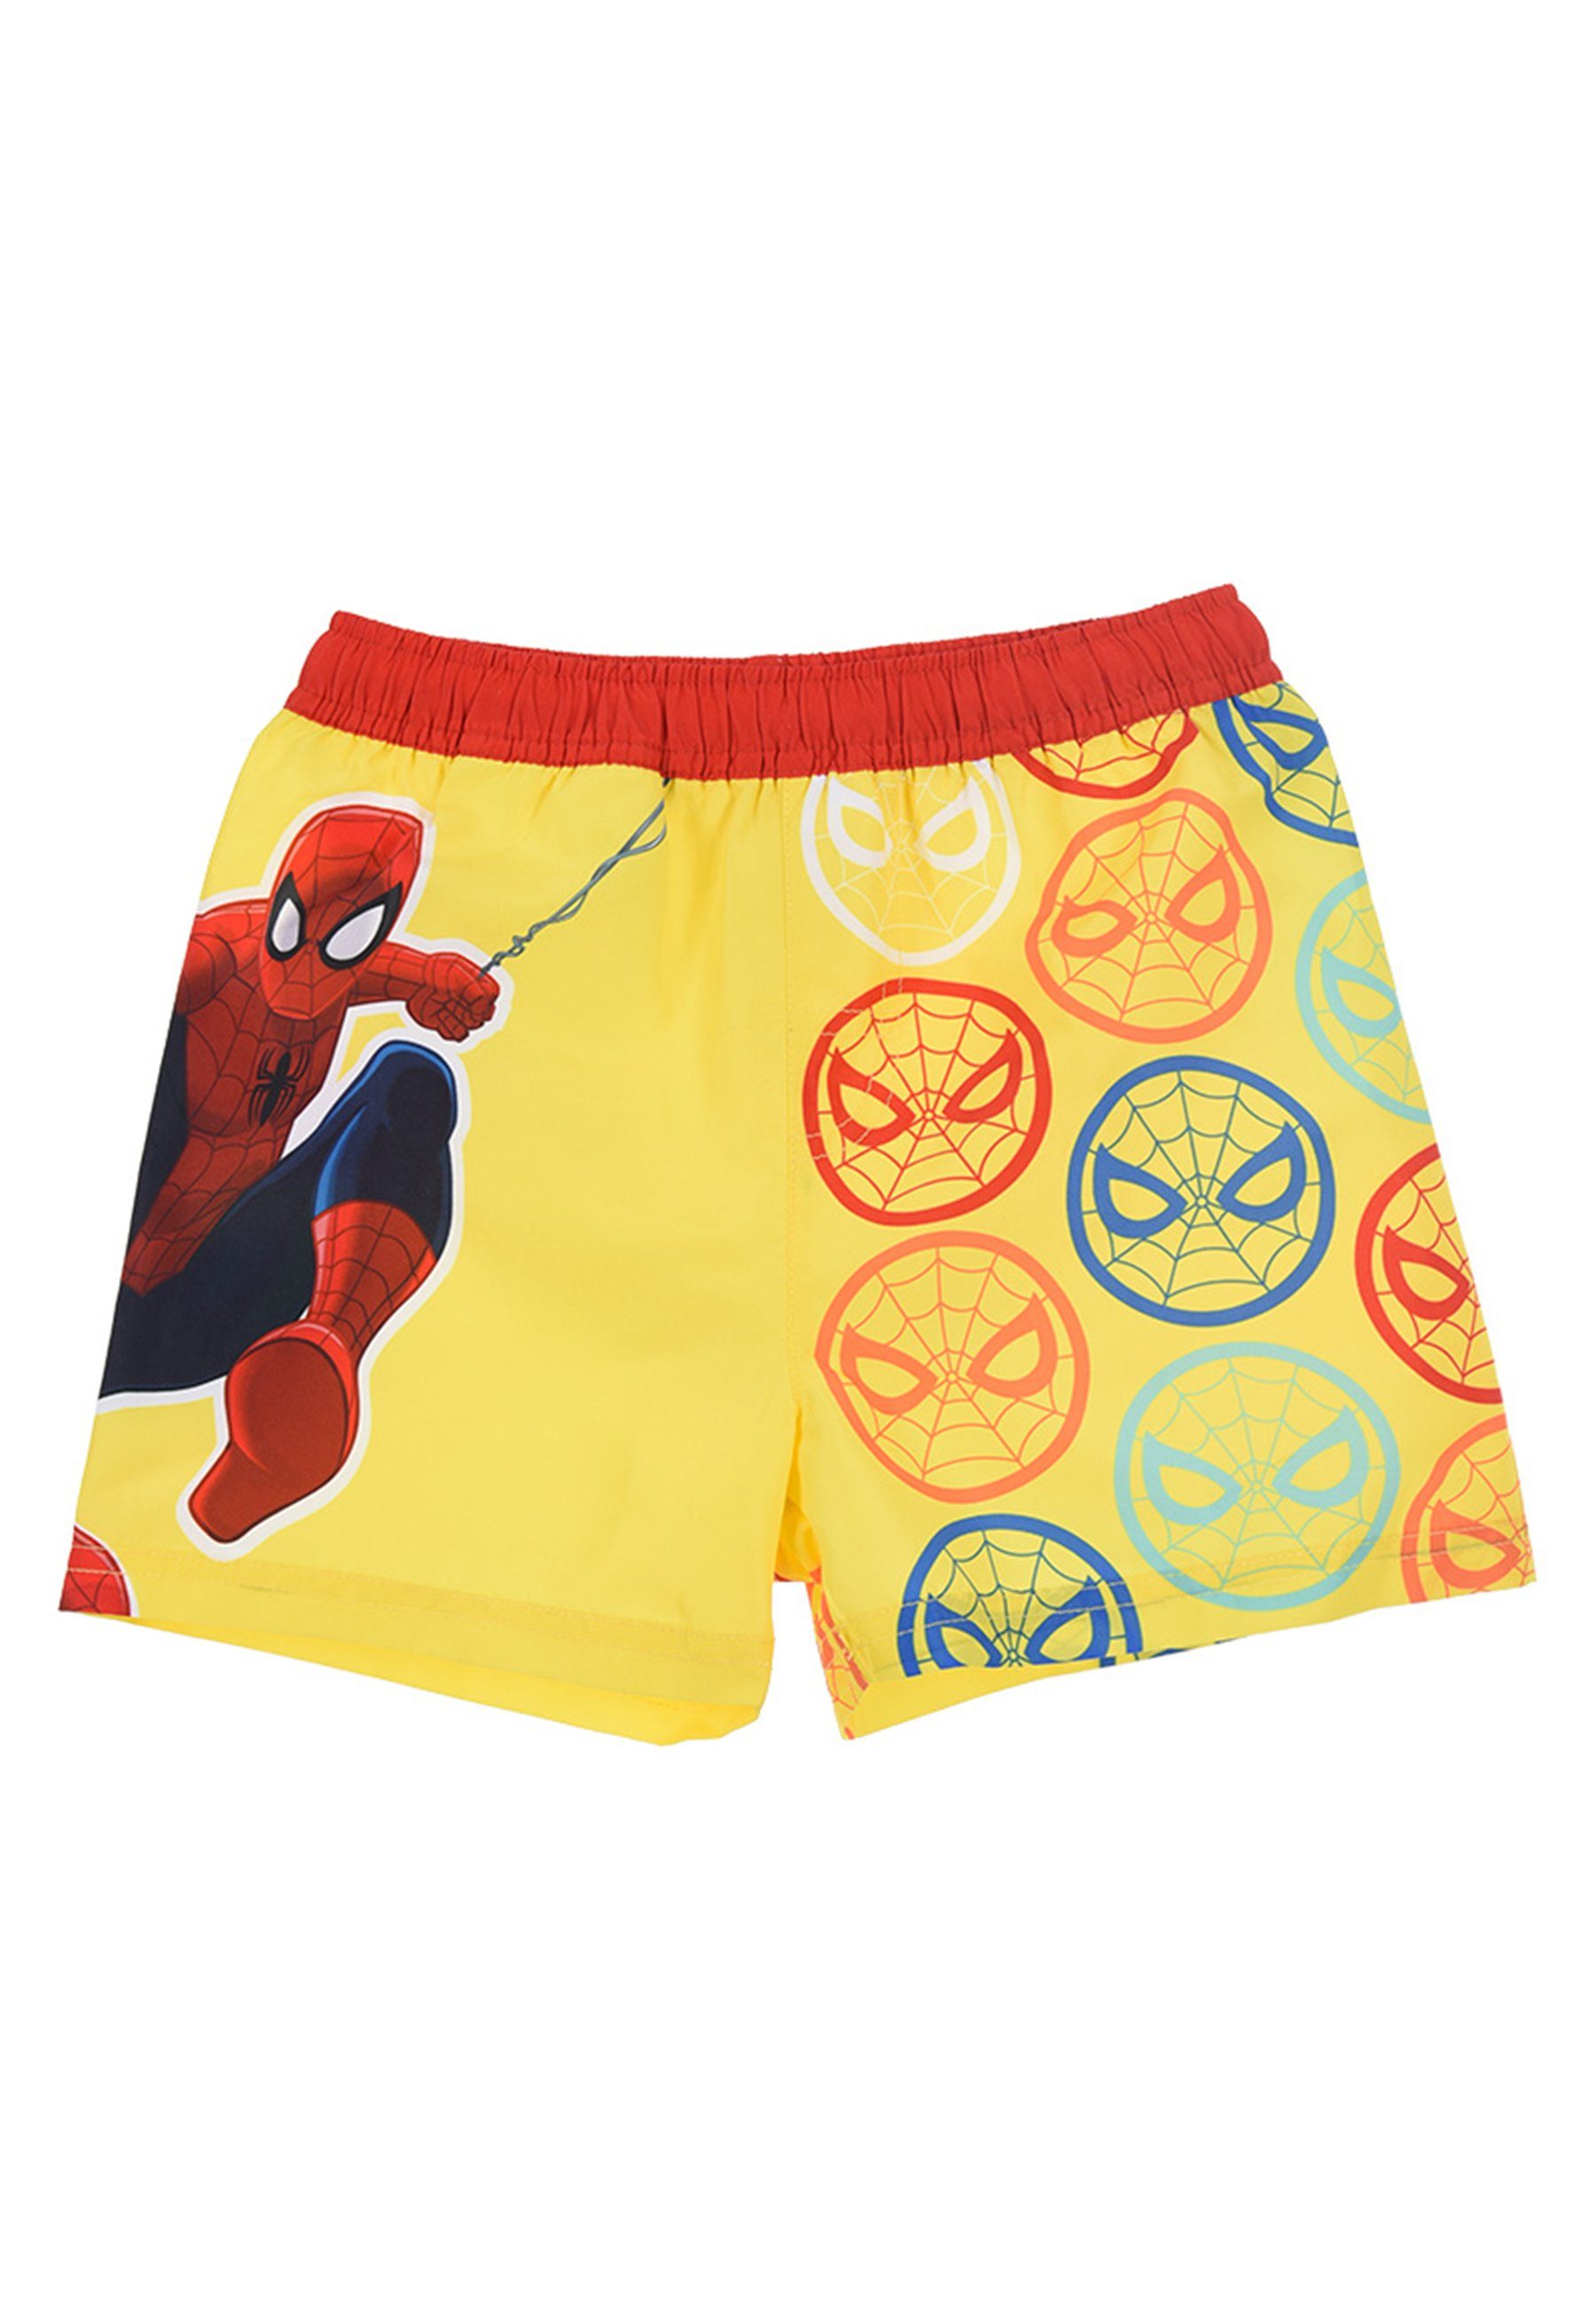 Spiderman Badeshorts Marvel Jungen Badehose Bermuda-Shorts Badepants Gelb Kinder